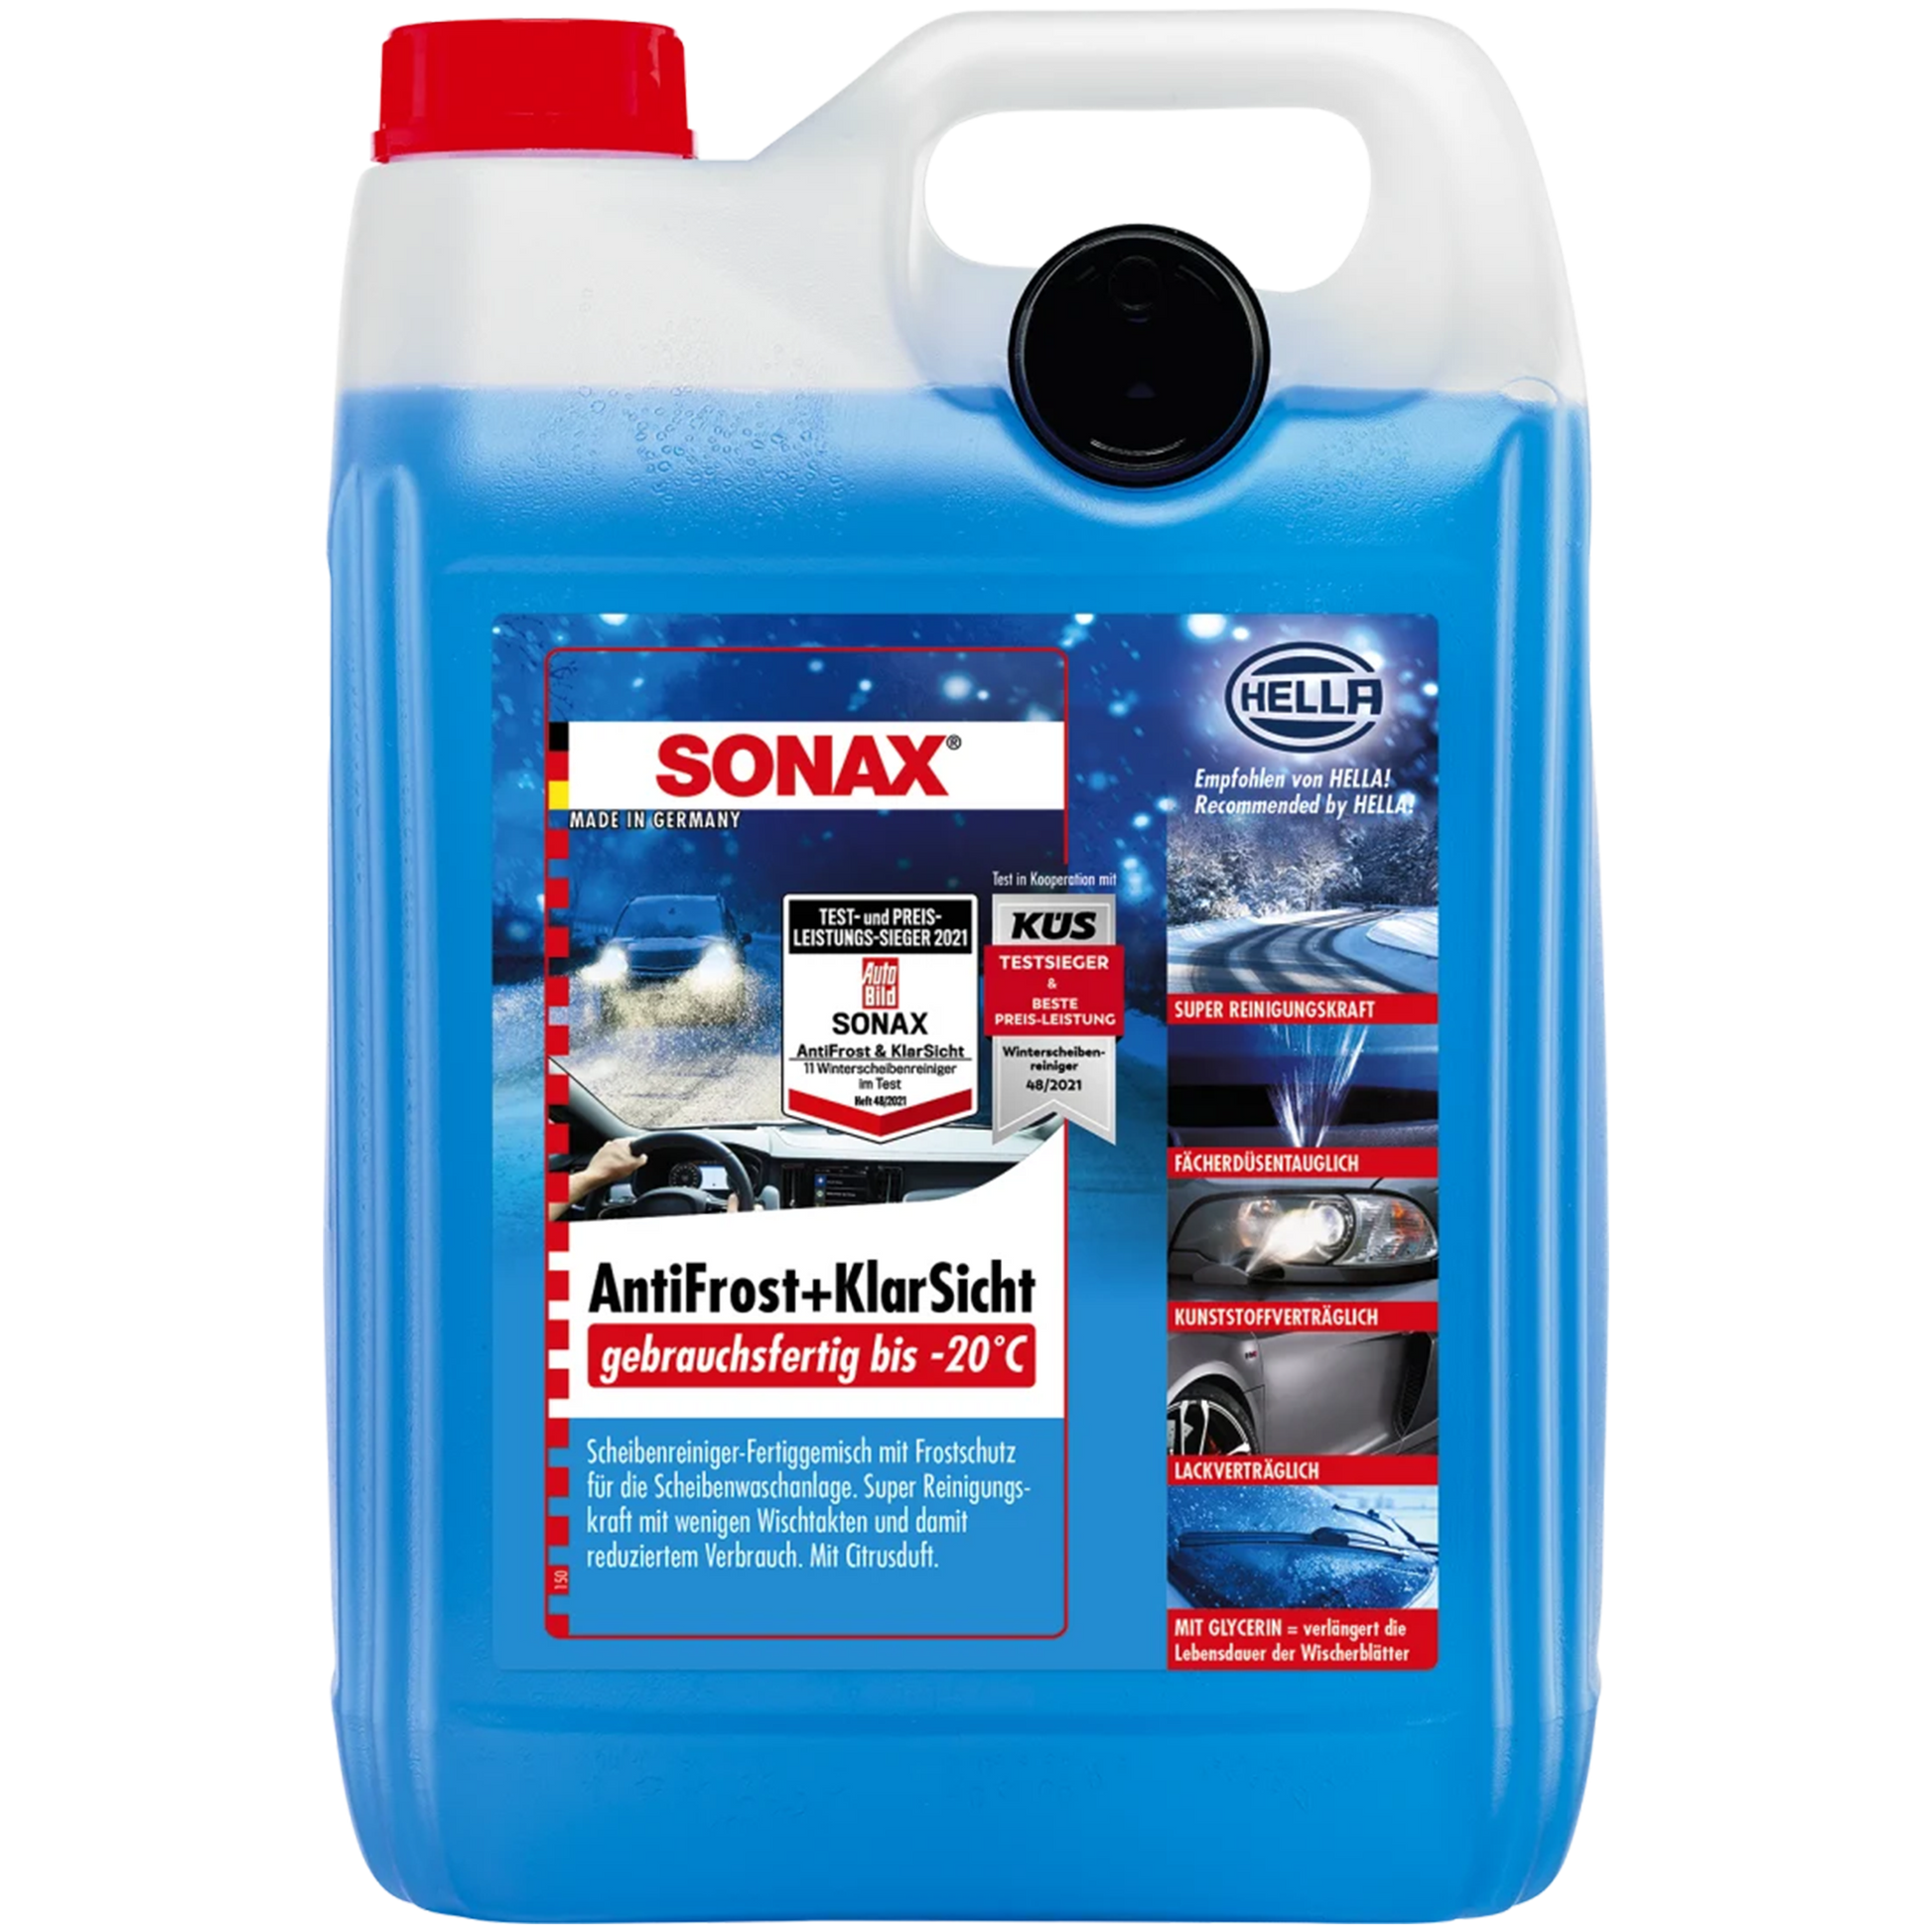 SONAX Antifrost & Klarsicht - gebrauchsfertig bis -20°C – KFZ